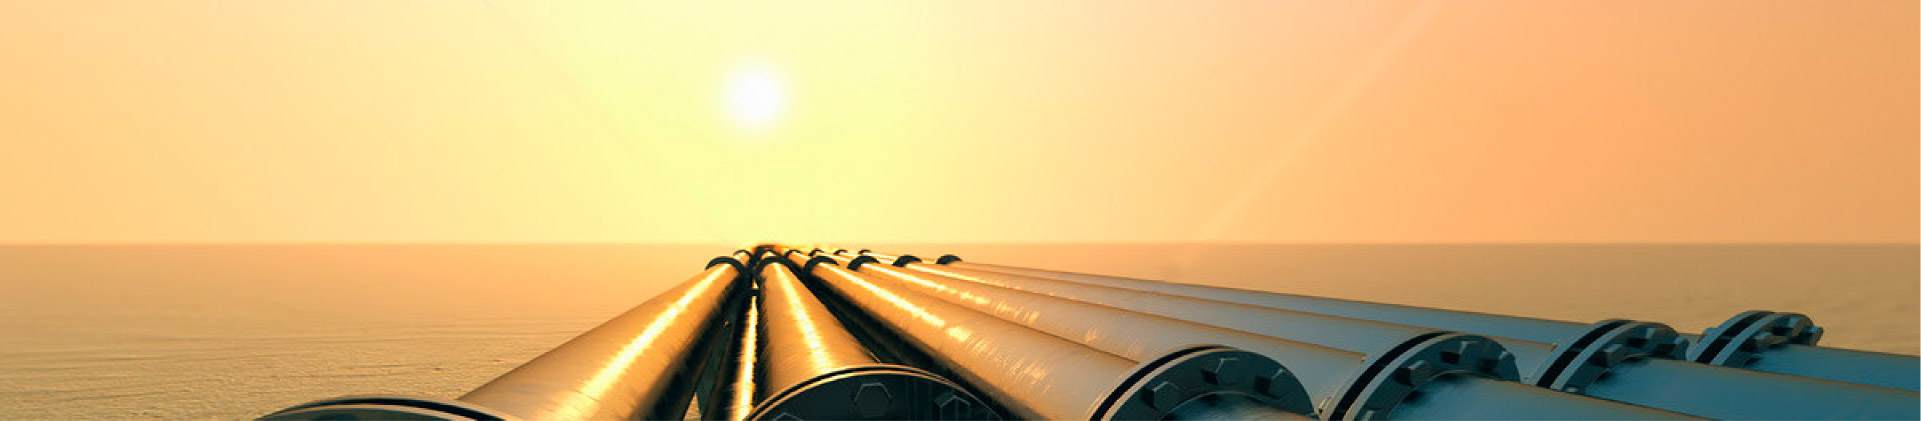 CNPC: El gas natural se convertirá en un nuevo punto de crecimiento de la cooperación energética ent